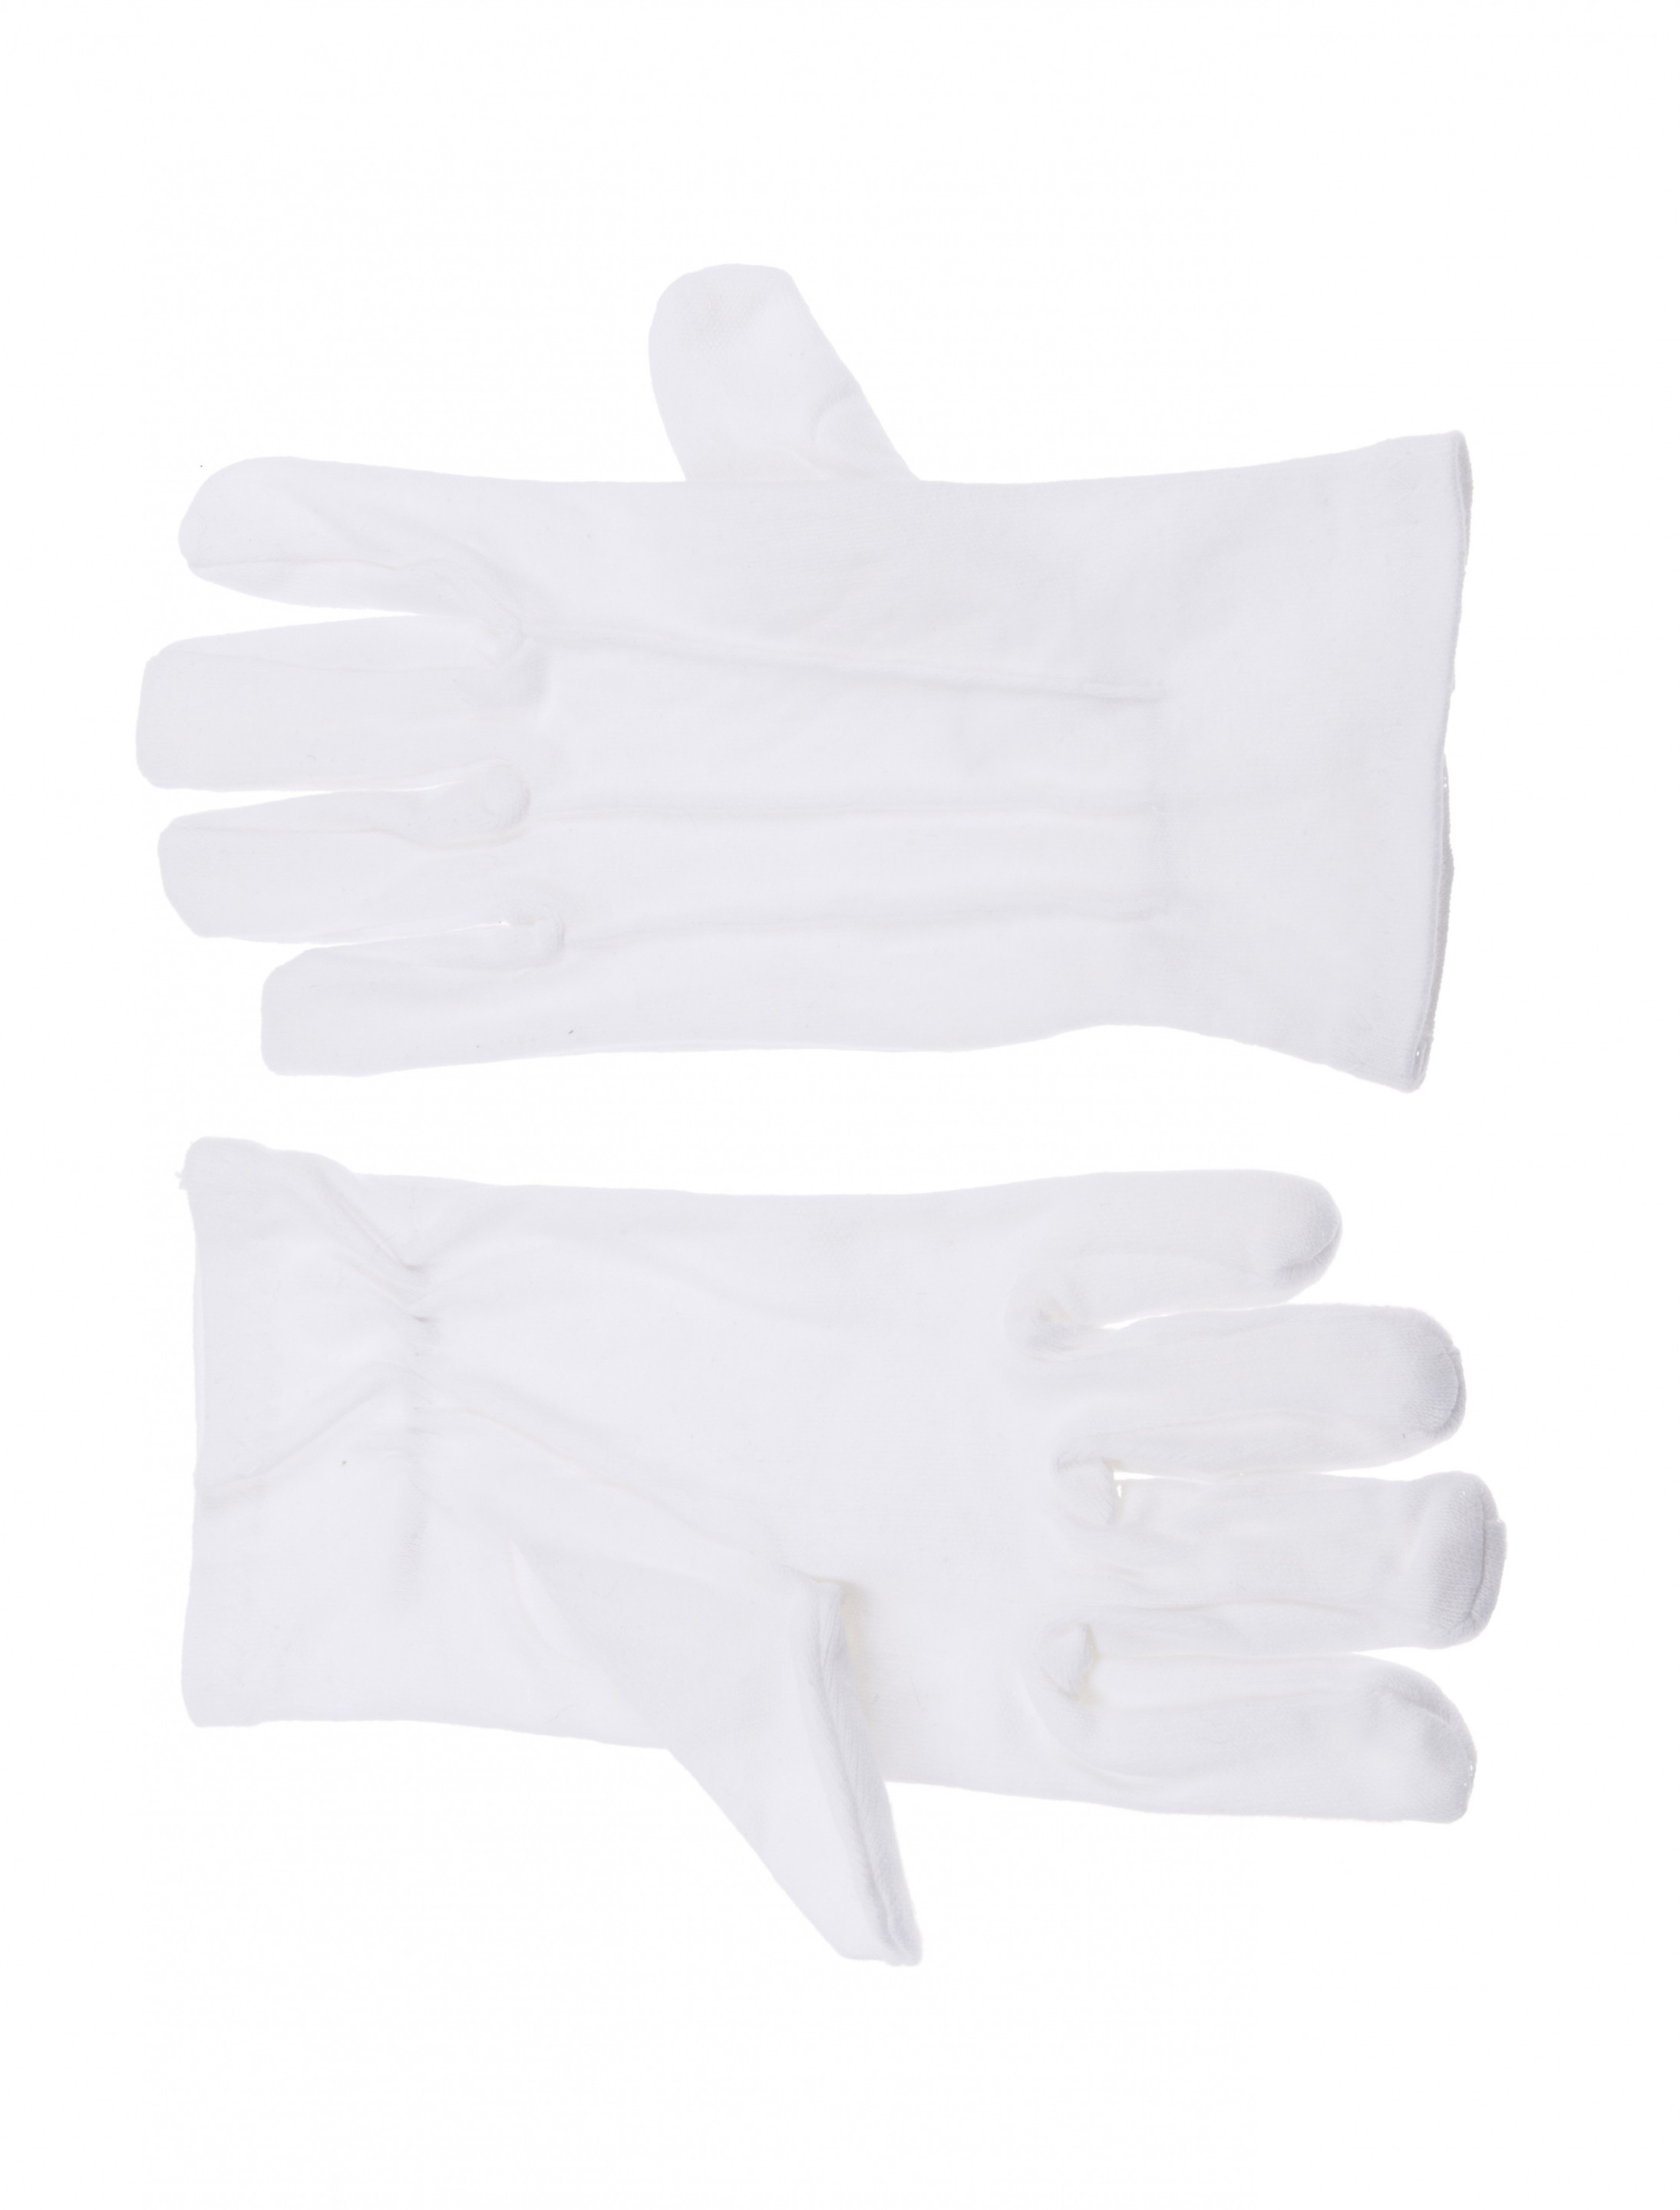 Handschuhe Baumwolle mit Naht weiß XS